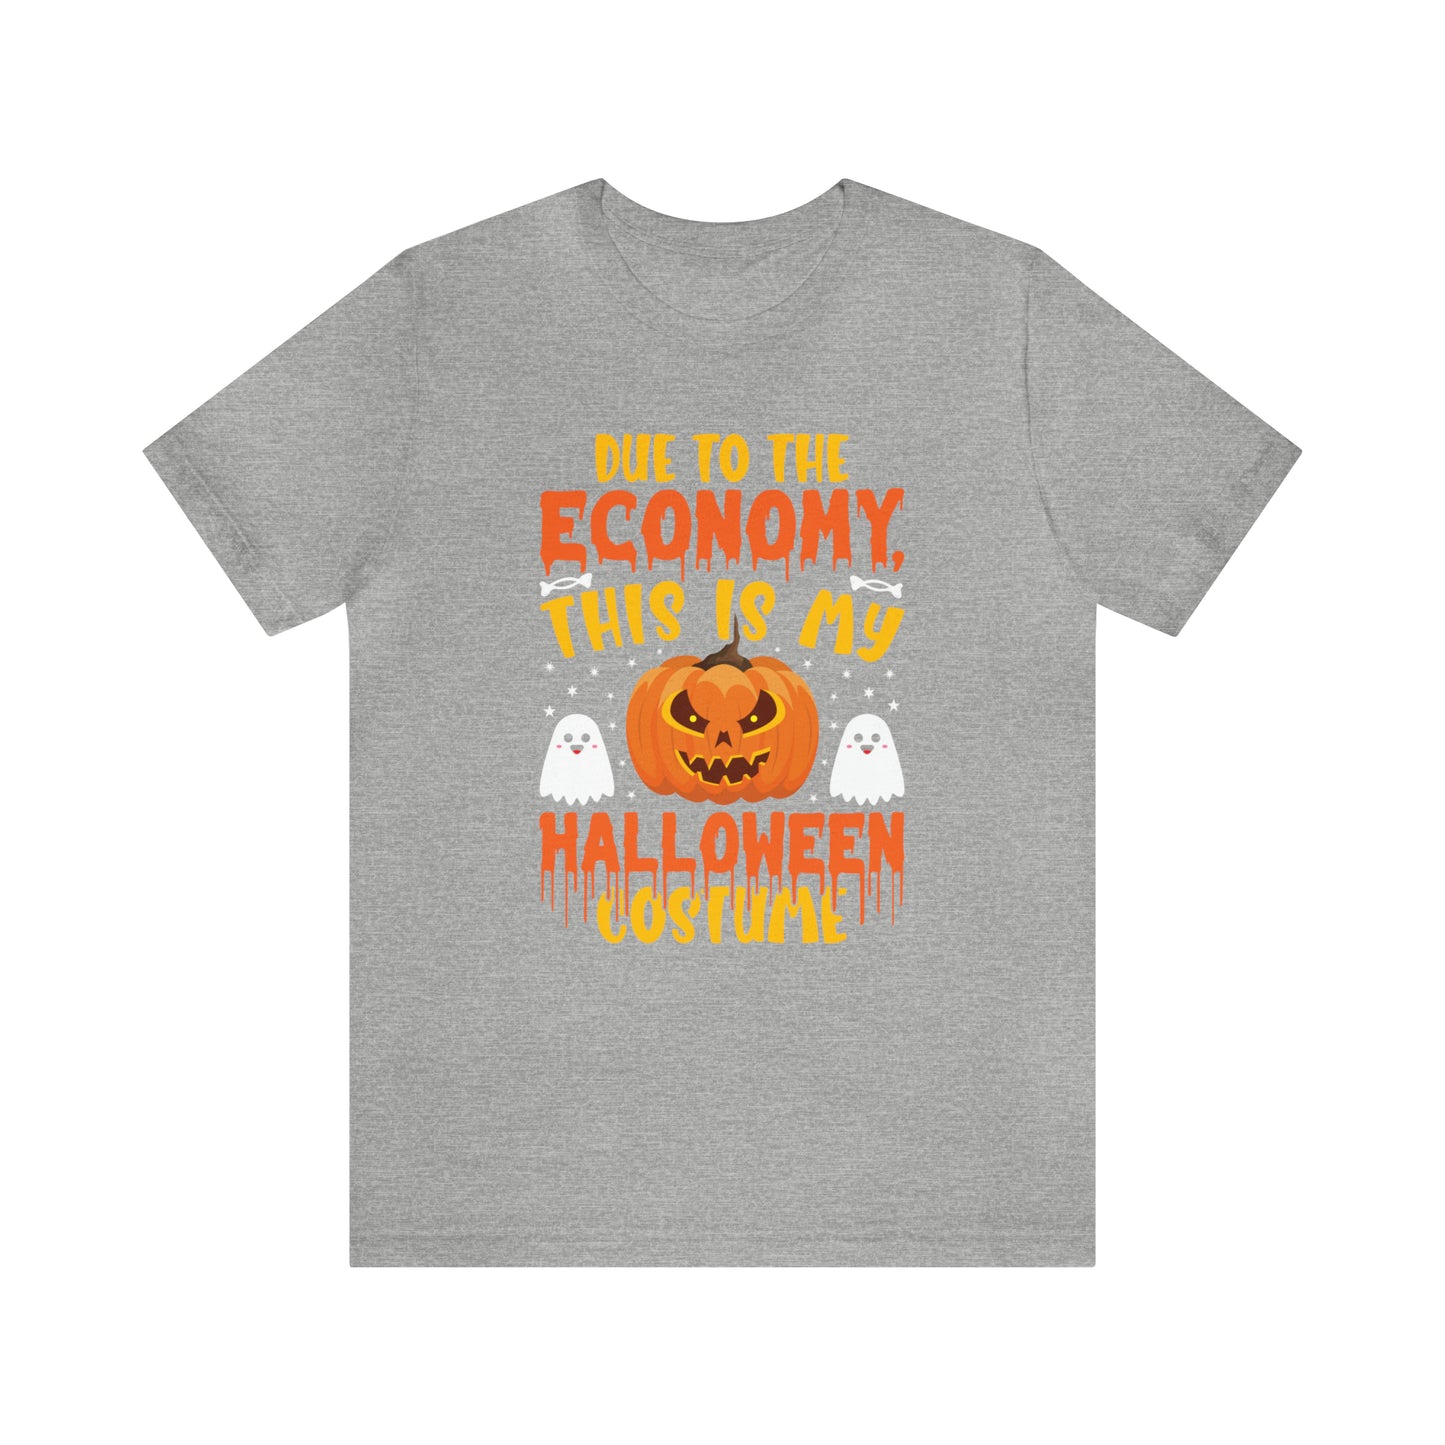 Economy Halloween Costume